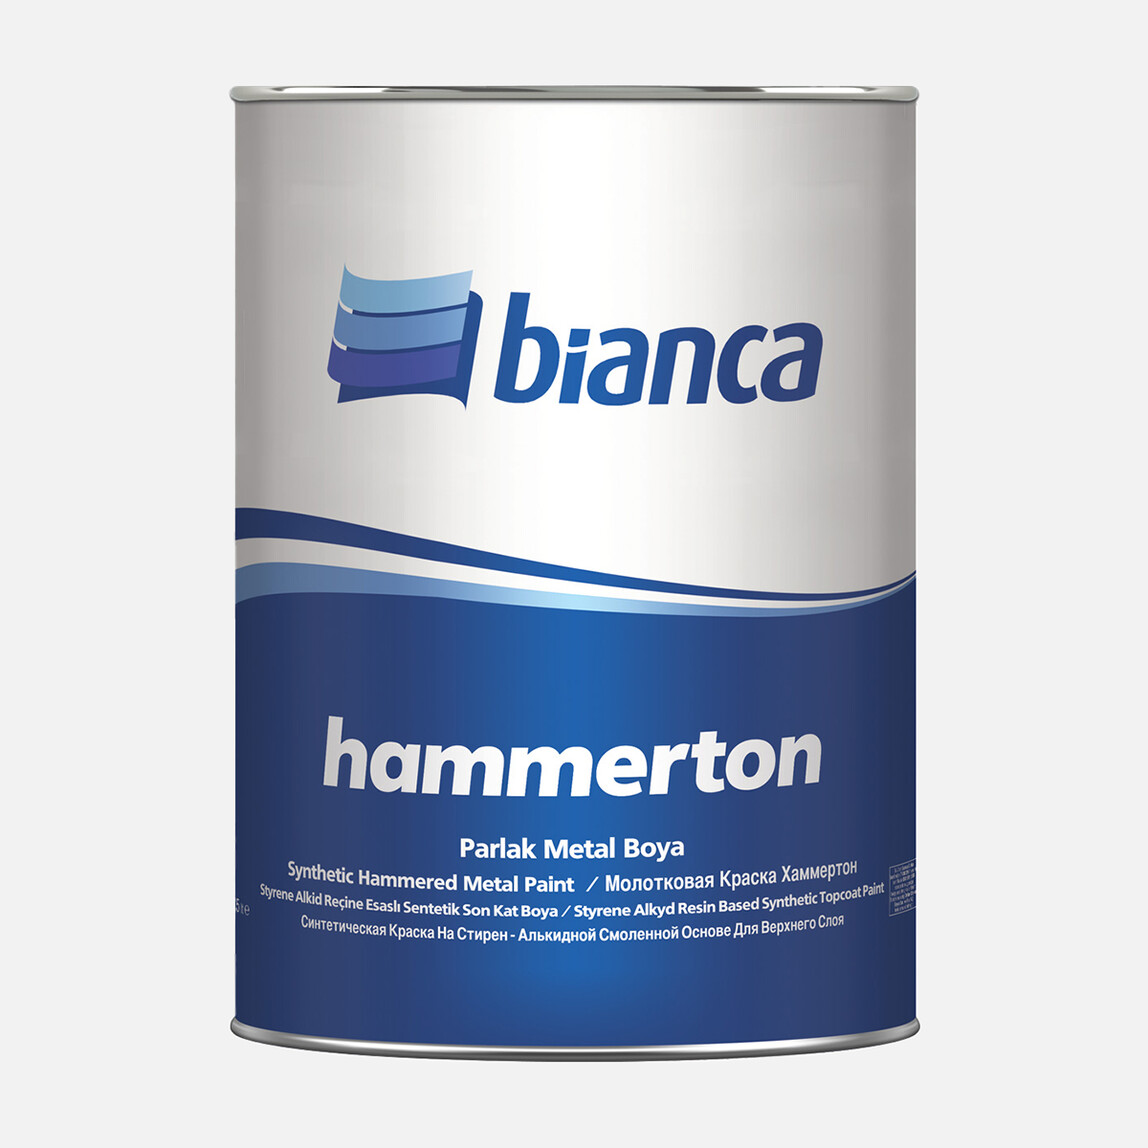    Bianca 0,75 L Hammerton Elegant Boya Gold   